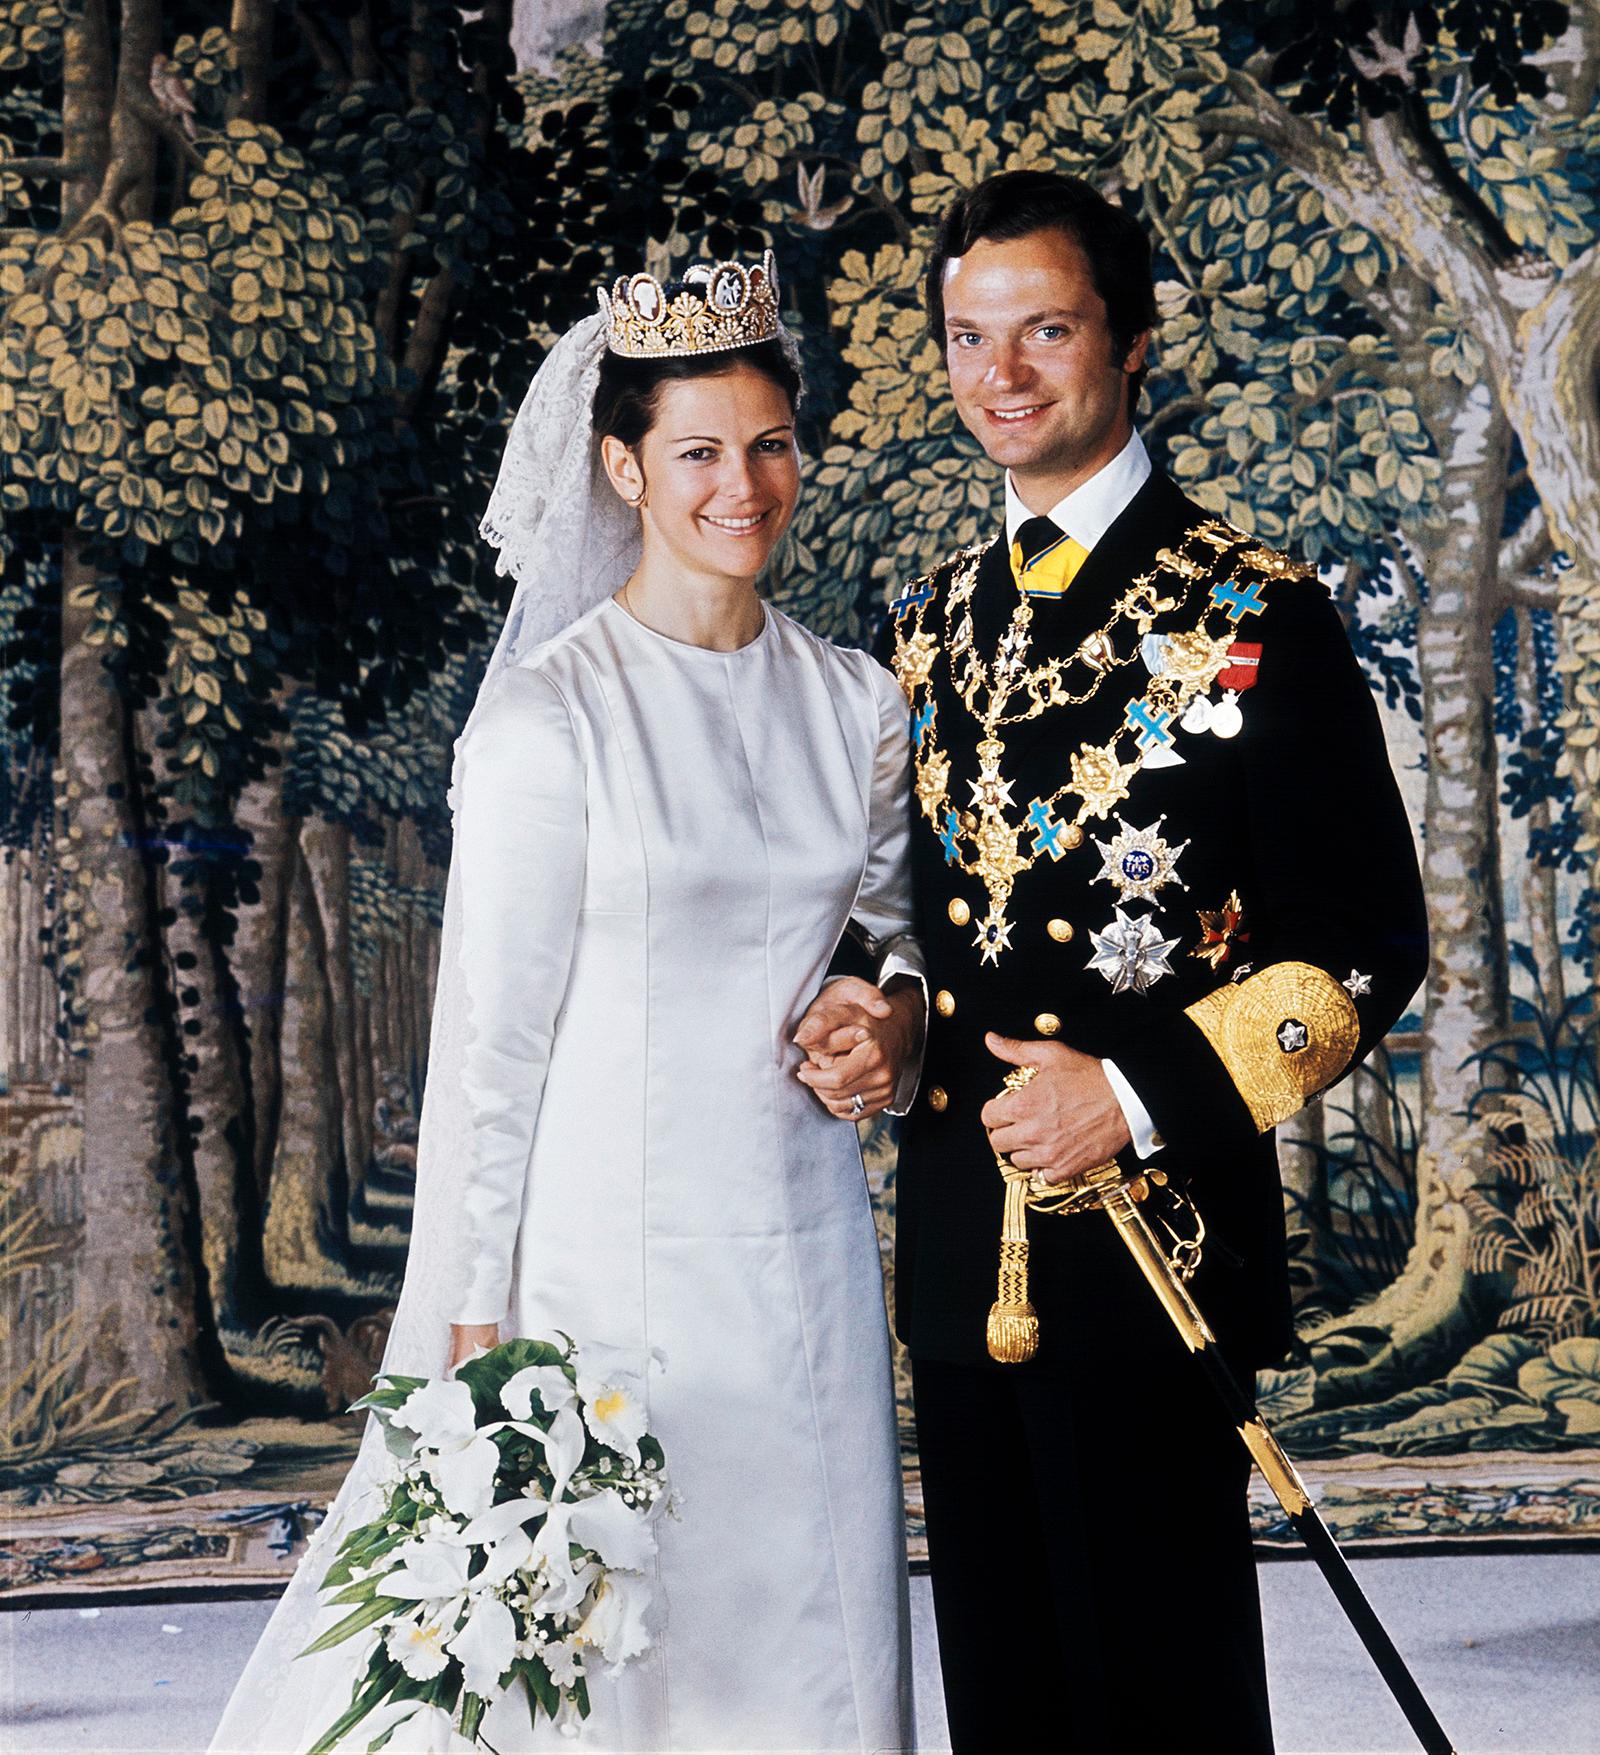 1976 fotograferade Lennart Nilsson den officiella bröllopsbilden på det svenska kungaparet drottning Silvia och kung Carl XVI Gustaf.